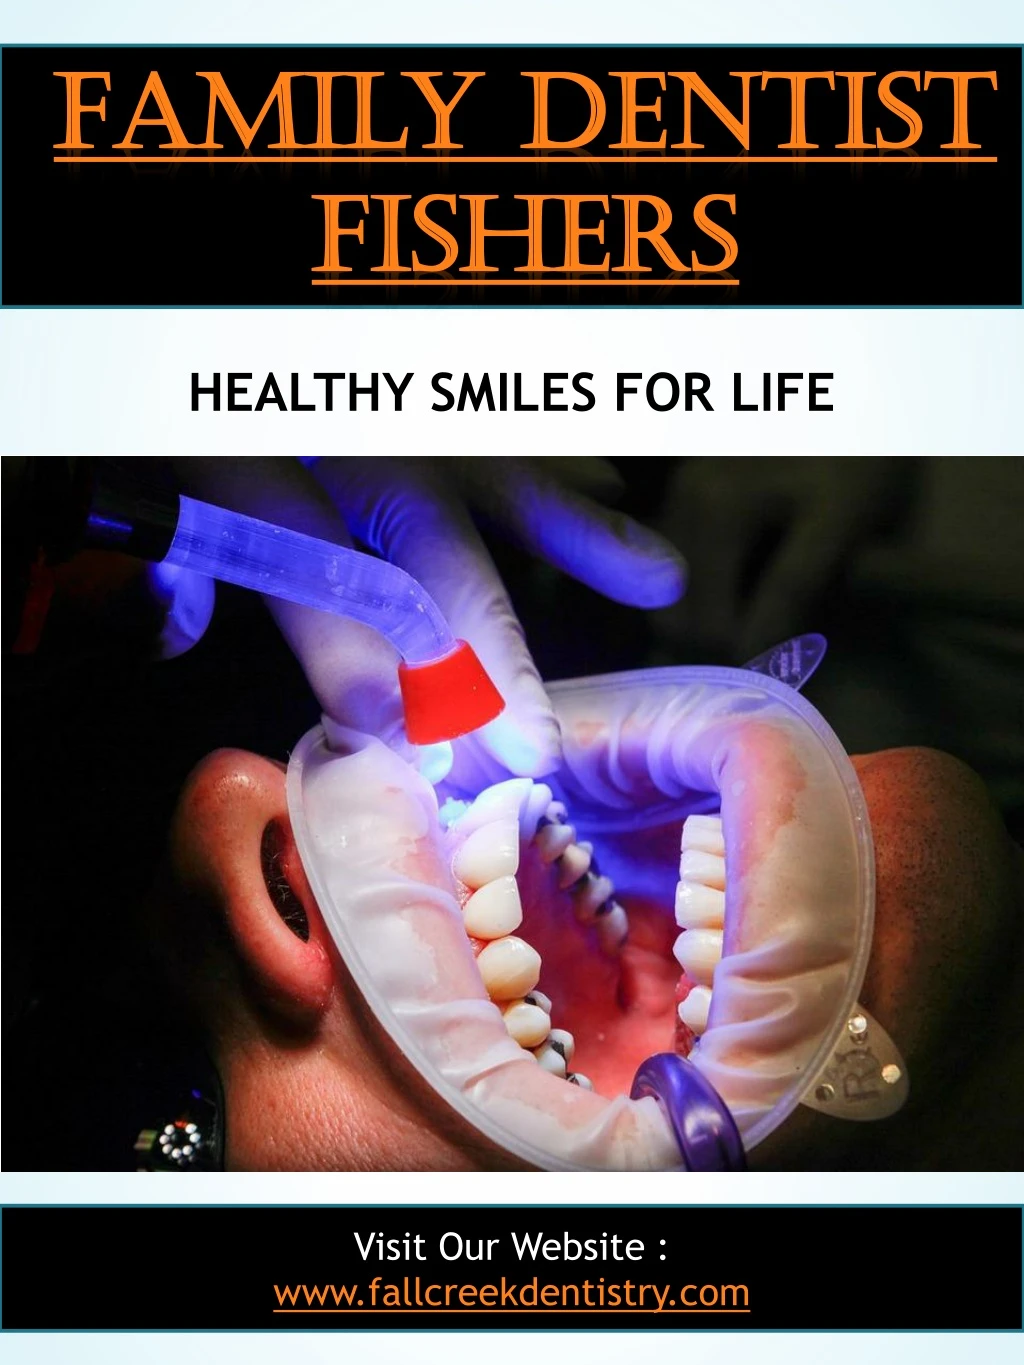 family dentist family dentist fishers fishers